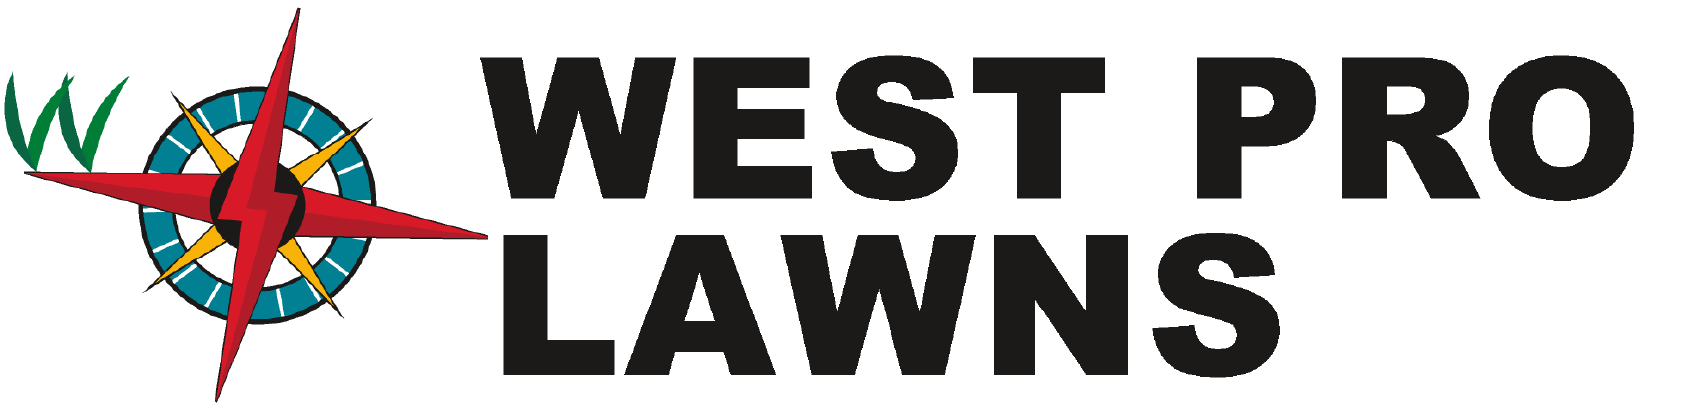 West Pro Lawns